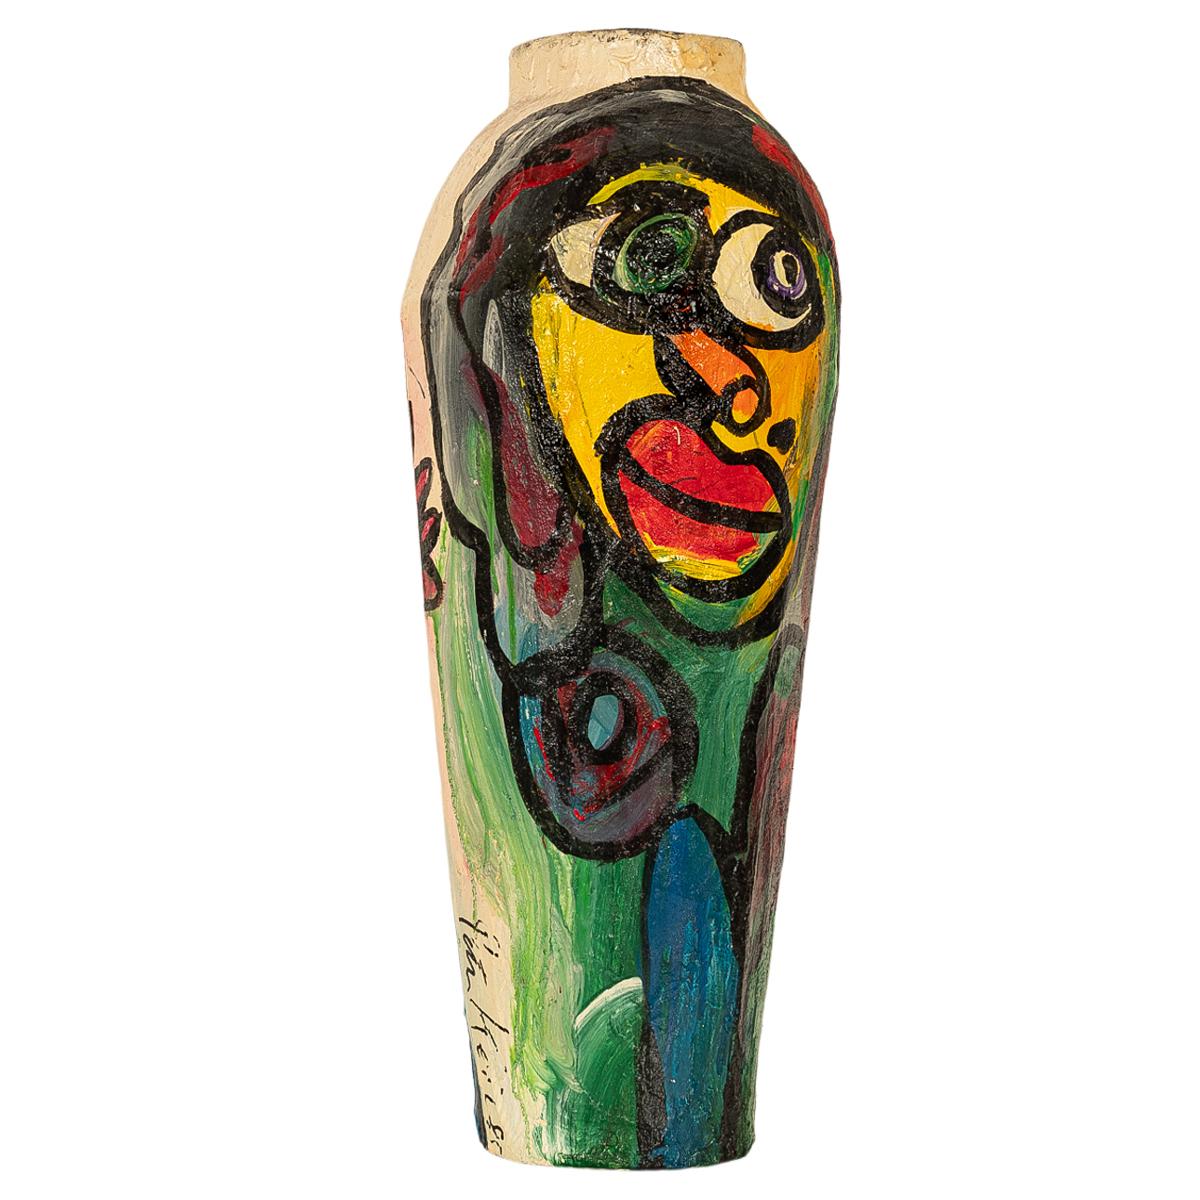 Eine große abstrakte expressionistische Bodenvase des berühmten deutsch-amerikanischen Expressionisten Peter Robert Keil (geb. 1942), signiert und datiert 1985.
Die Bodenvase ist groß und aus Pappmaché gefertigt. Auf jeder Seite ist eine bunte,